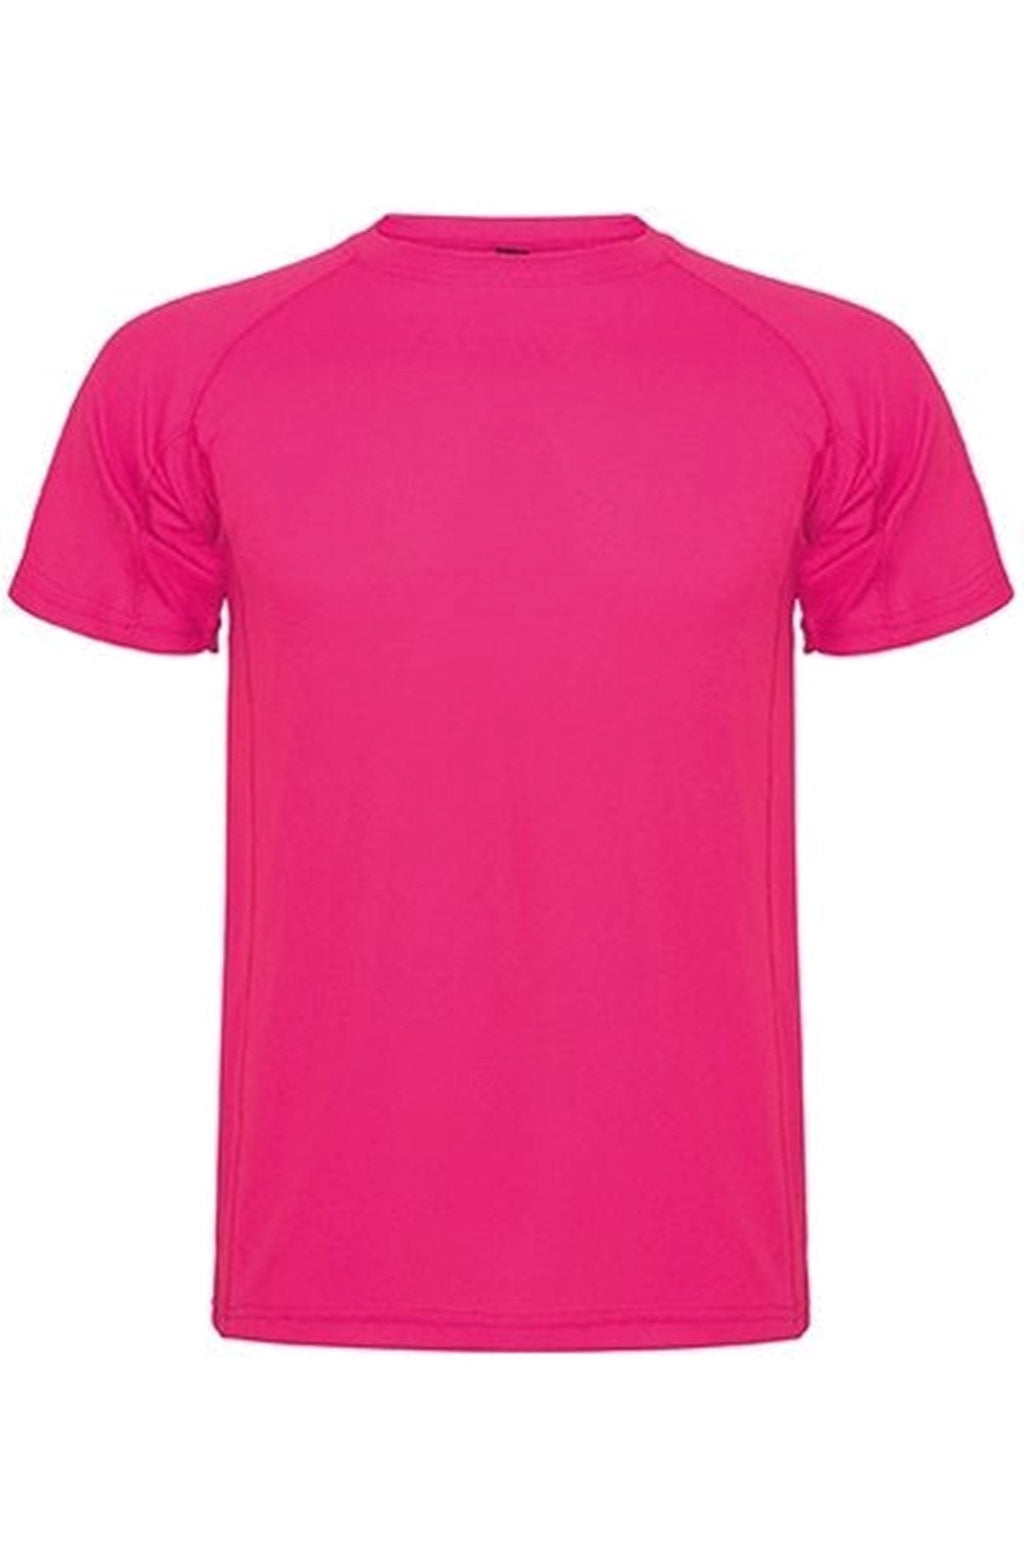 Tréningové tričko - ružové